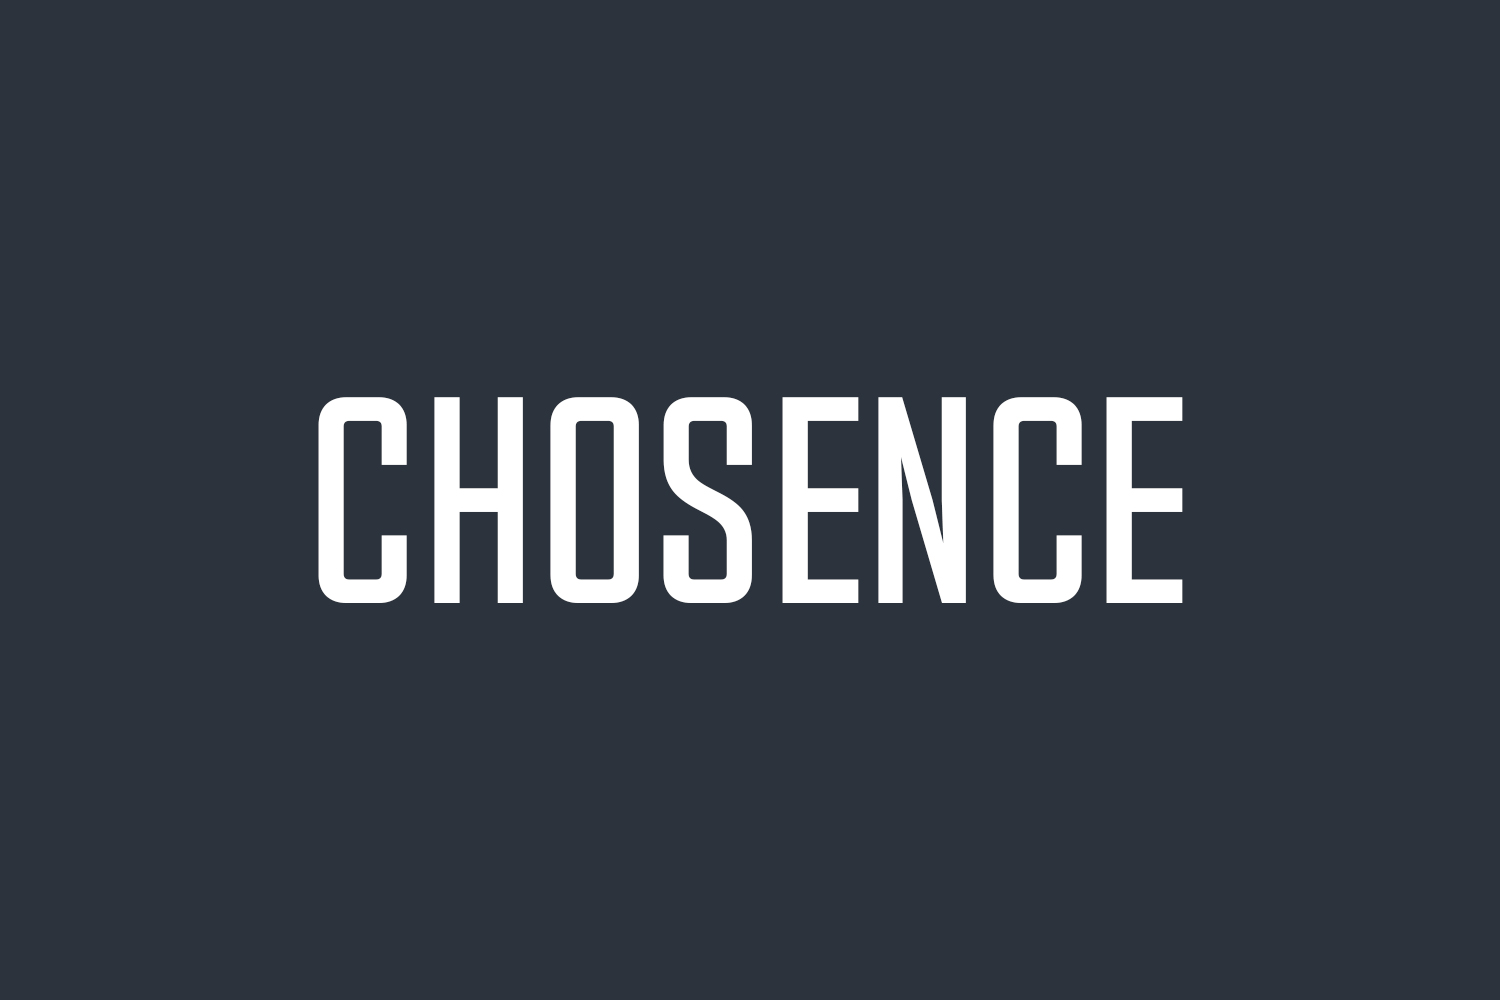 Chosence Free Font